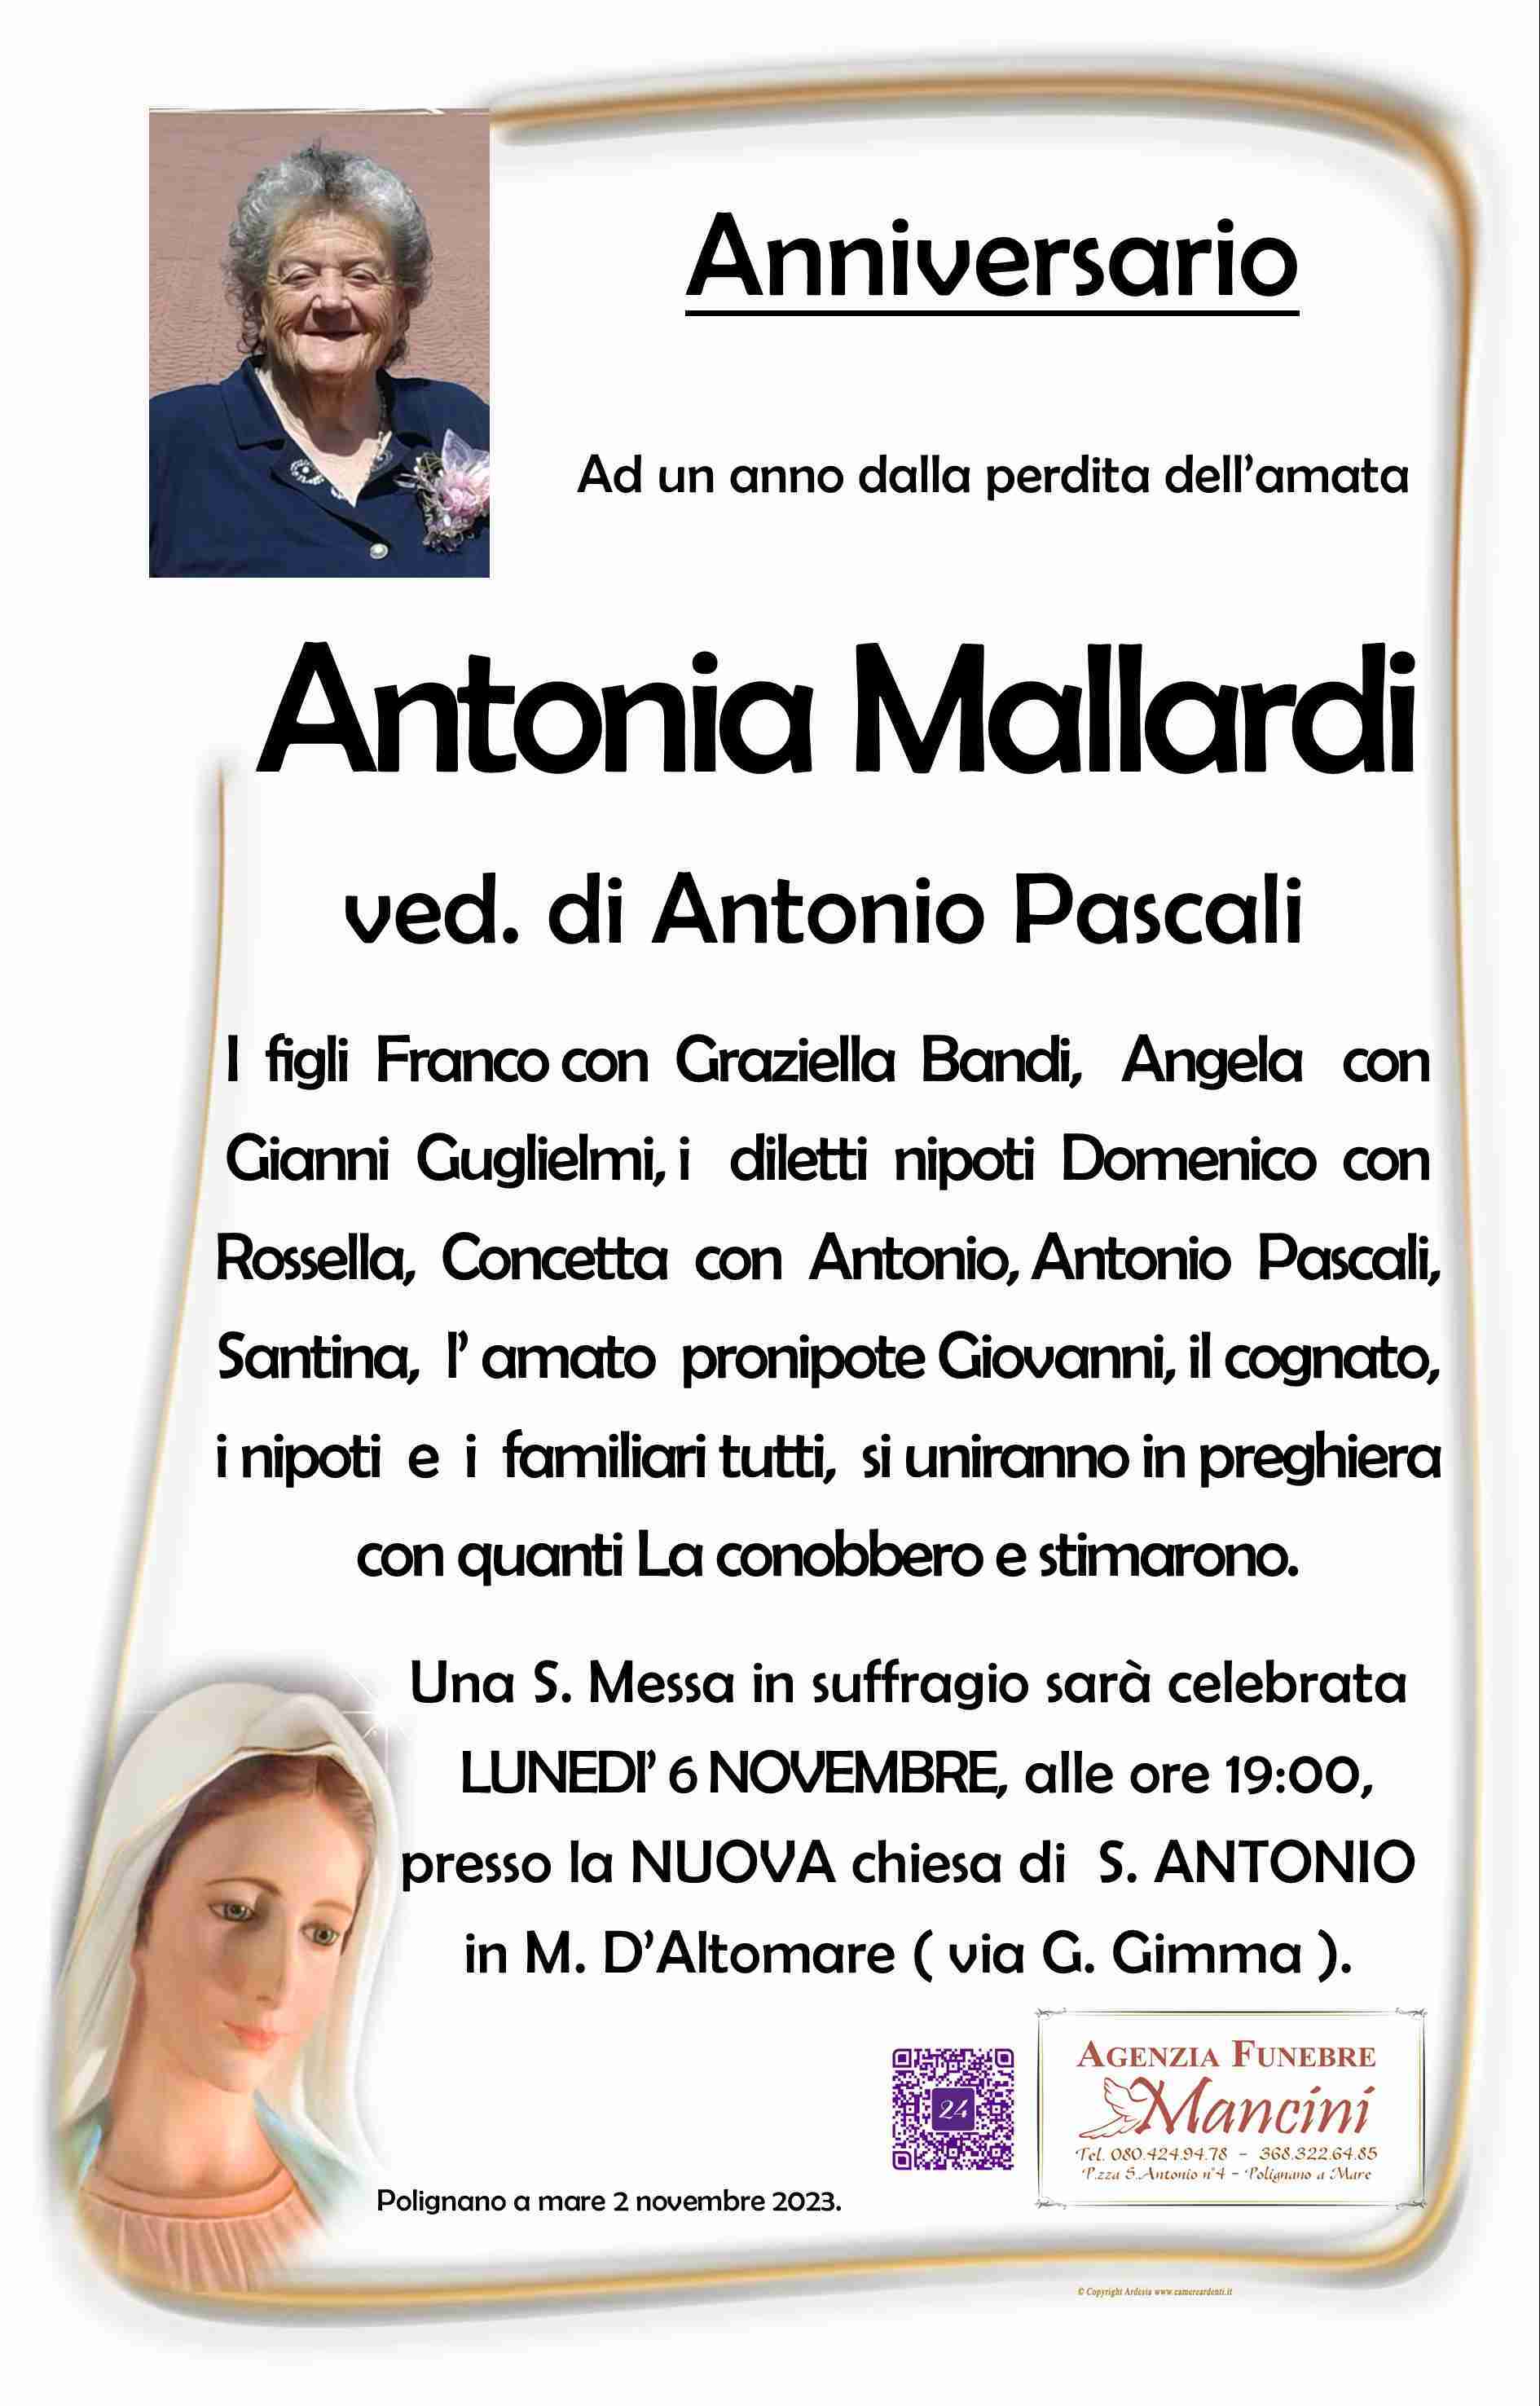 Antonia Mallardi